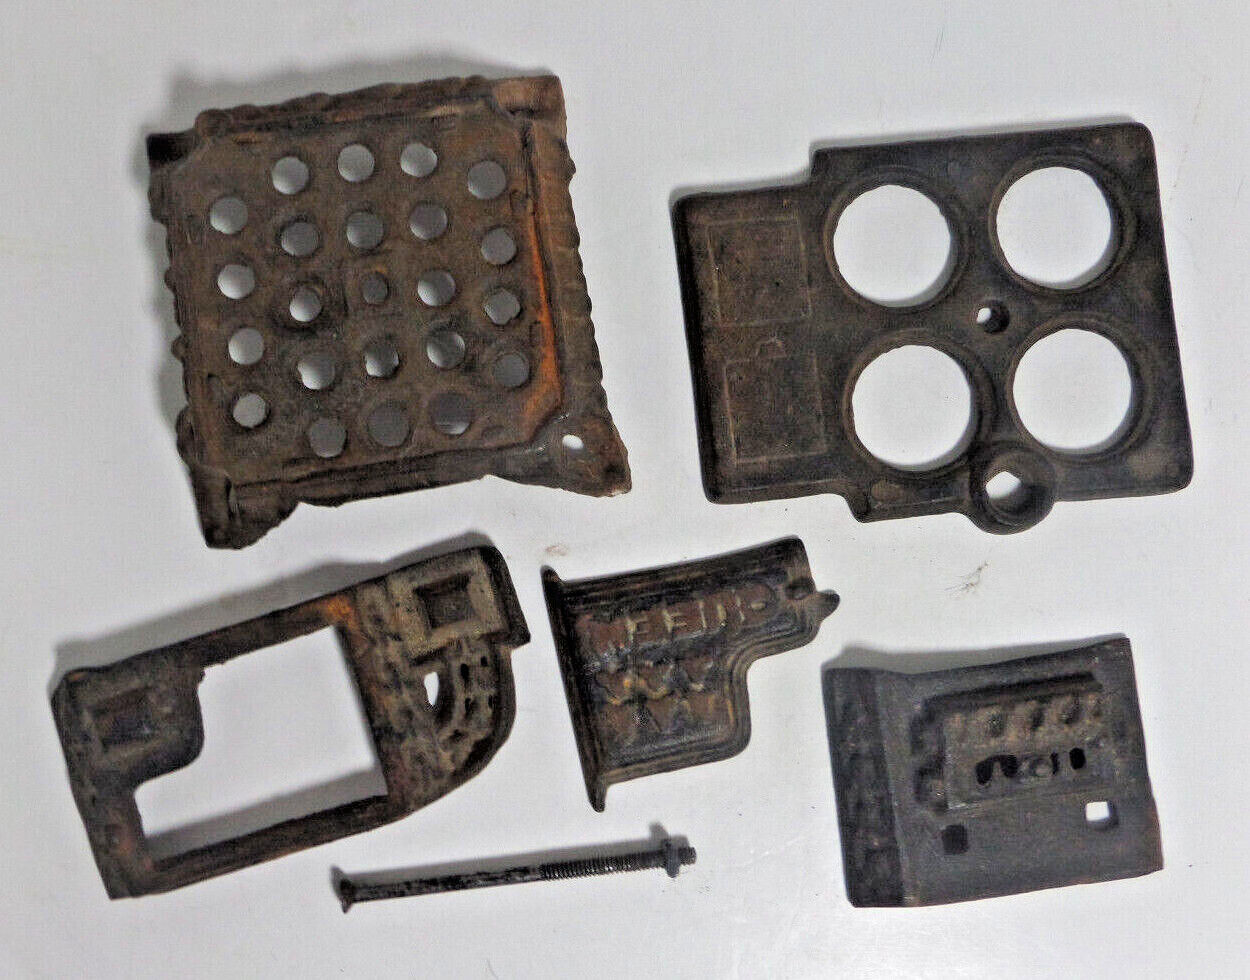 cast iron model stove parts toy salesmans's sample vintage